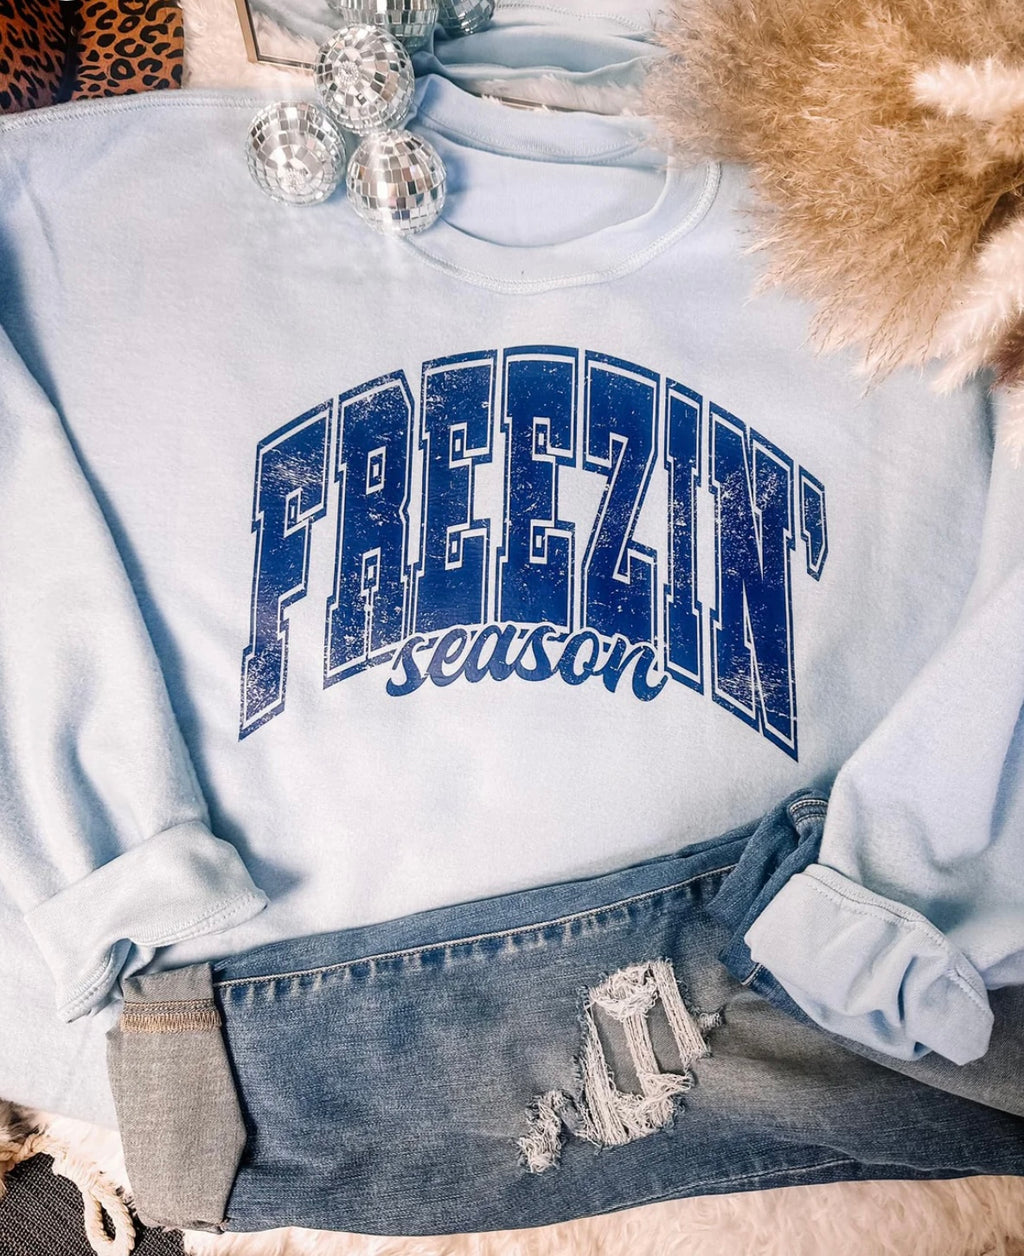 Freezin’ Season! Inside Out Sweatshirt